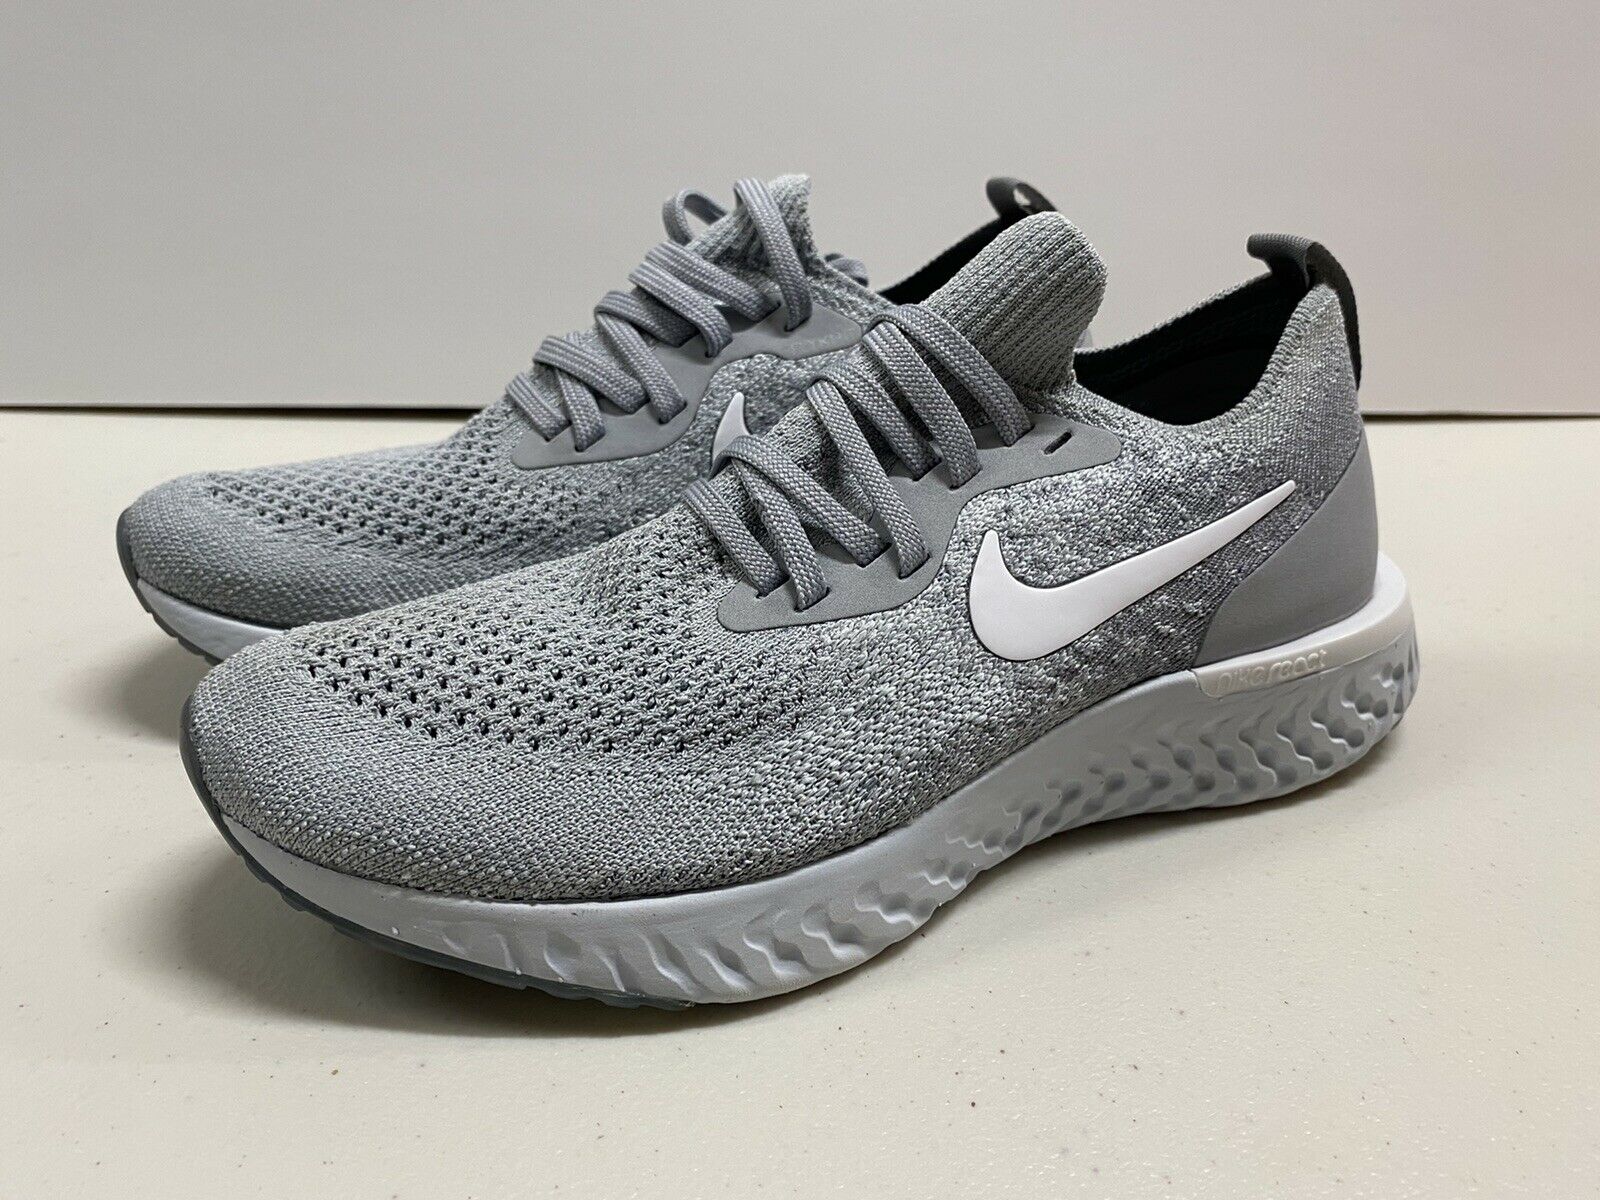 Nike Women's Epic React Flyknit Size 5 Grey Running Shoes AQ0070-002 Sneakers